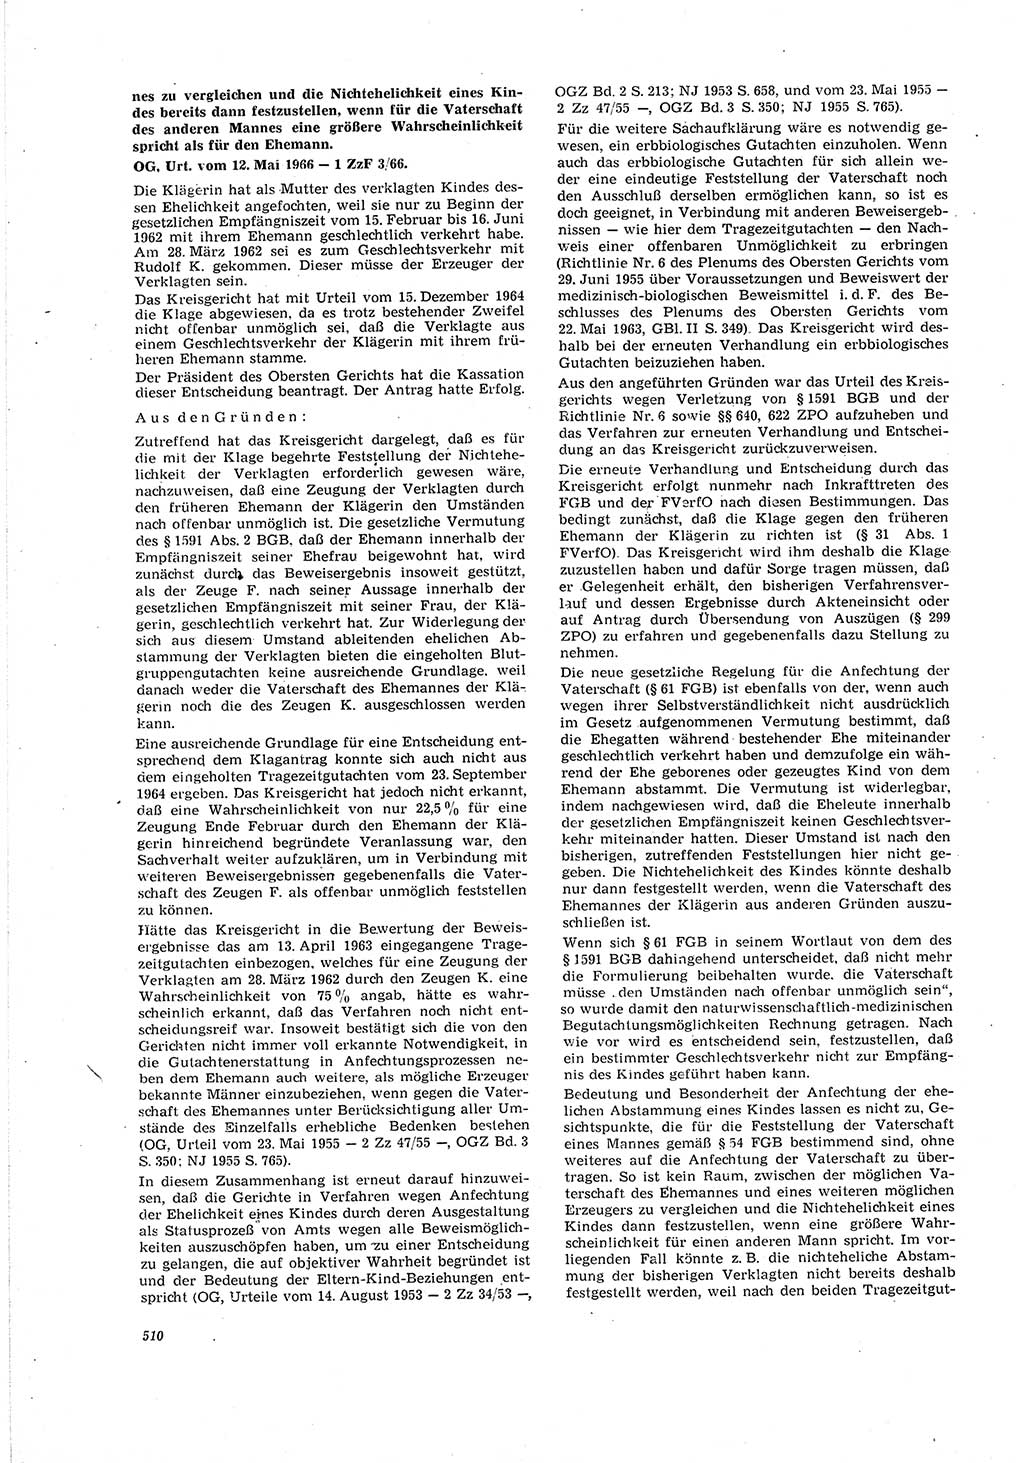 Neue Justiz (NJ), Zeitschrift für Recht und Rechtswissenschaft [Deutsche Demokratische Republik (DDR)], 20. Jahrgang 1966, Seite 510 (NJ DDR 1966, S. 510)